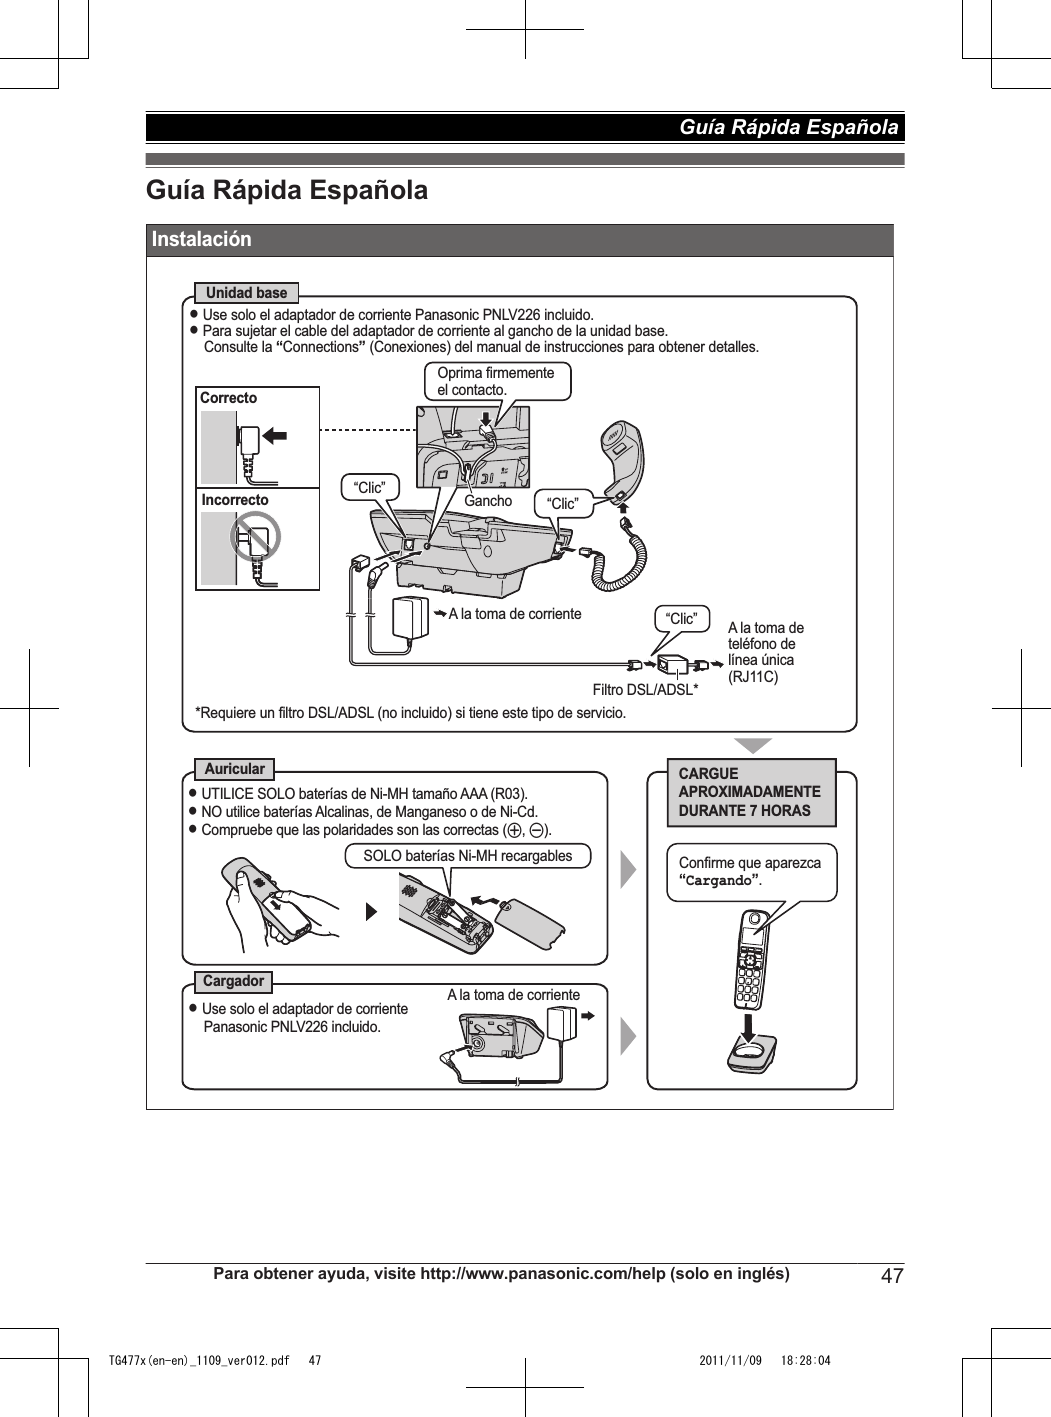 Guía Rápida Española InstalaciónUnidad baseAuricularCargadorCARGUE APROXIMADAMENTE DURANTE 7 HORASL Use solo el adaptador de corriente Panasonic PNLV226 incluido.L Para sujetar el cable del adaptador de corriente al gancho de la unidad base.Consulte la “Connections” (Conexiones) del manual de instrucciones para obtener detalles.SOLO baterías Ni-MH recargables*Requiere un filtro DSL/ADSL (no incluido) si tiene este tipo de servicio.CorrectoIncorrectoL UTILICE SOLO baterías de Ni-MH tamaño AAA (R03).L NO utilice baterías Alcalinas, de Manganeso o de Ni-Cd.L Compruebe que las polaridades son las correctas (S, T).A la toma de corrienteL Use solo el adaptador de corriente Panasonic PNLV226 incluido.“Clic” A la toma de  teléfono de  línea única (RJ11C)Filtro DSL/ADSL*GanchoConfirme que aparezca “Cargando”.“Clic”Oprima firmemente el contacto.“Clic”A la toma de corrientePara obtener ayuda, visite http://www.panasonic.com/help (solo en inglés) 47Guía Rápida Española TG477x(en-en)_1109_ver012.pdf   47 2011/11/09   18:28:04